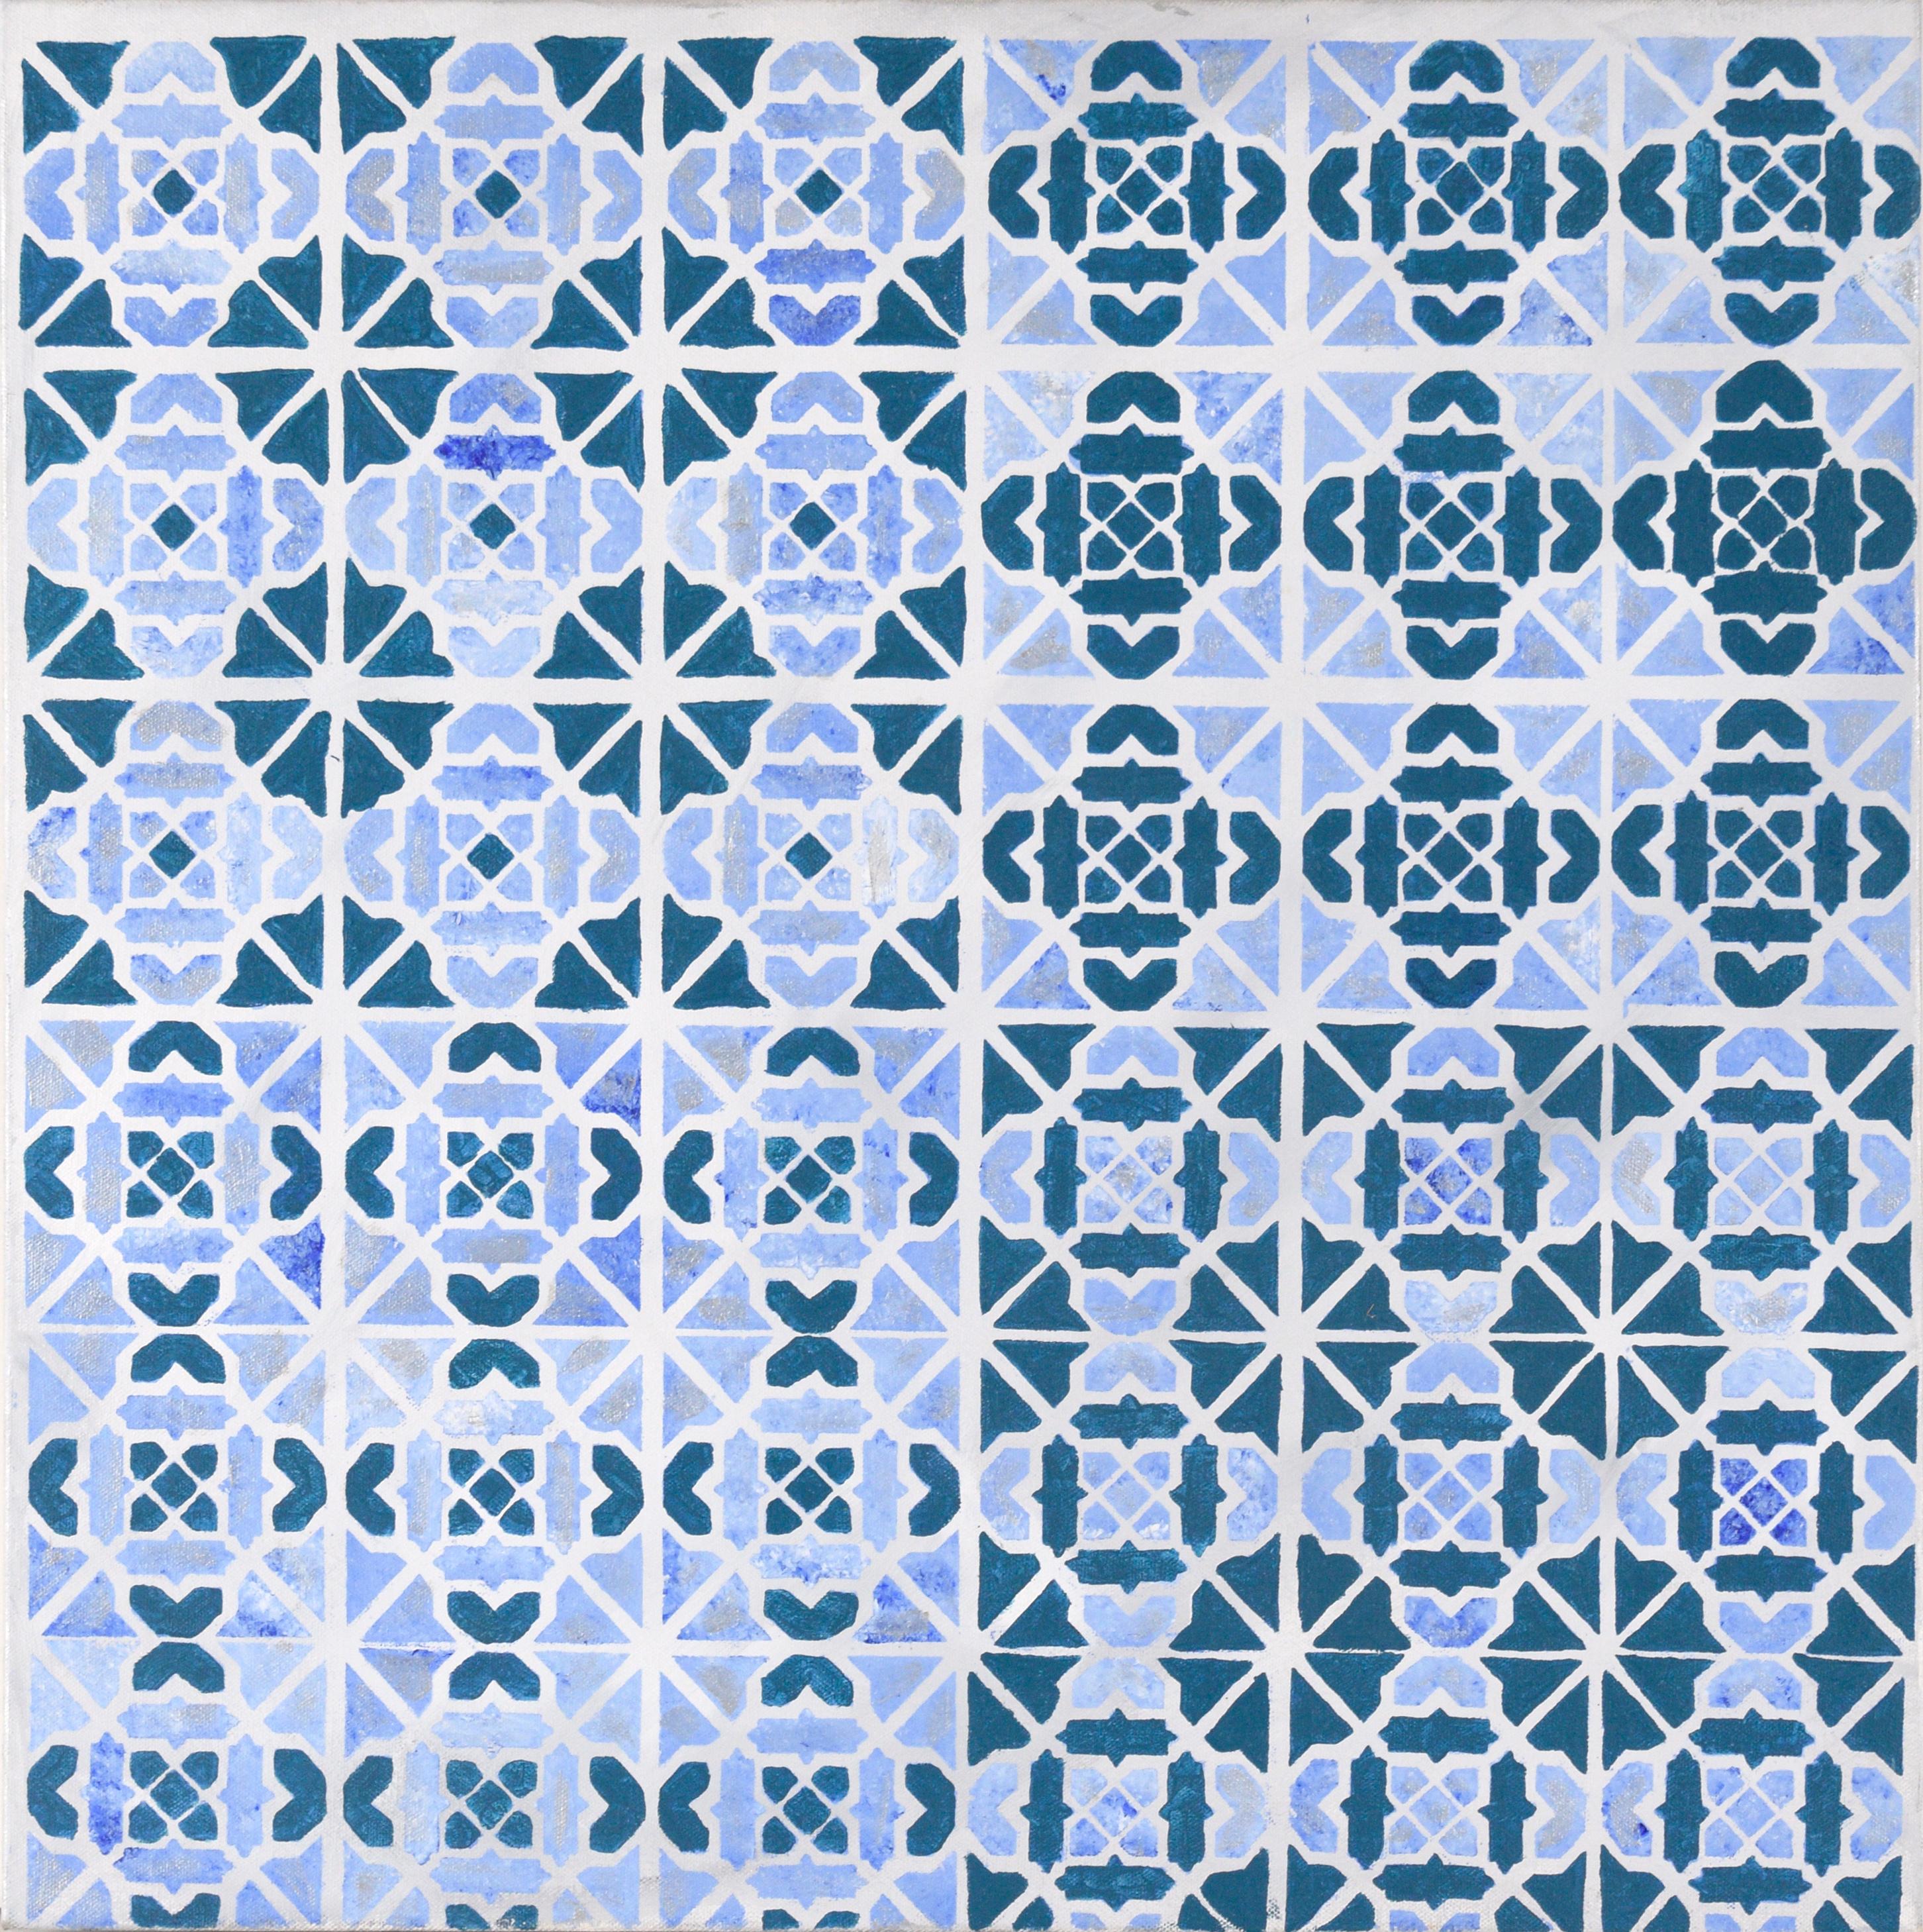 Unknown Abstract Painting – Abstraktes geometrisches Kachelmuster Op-Art in Blau und Silber - Acryl auf Leinwand